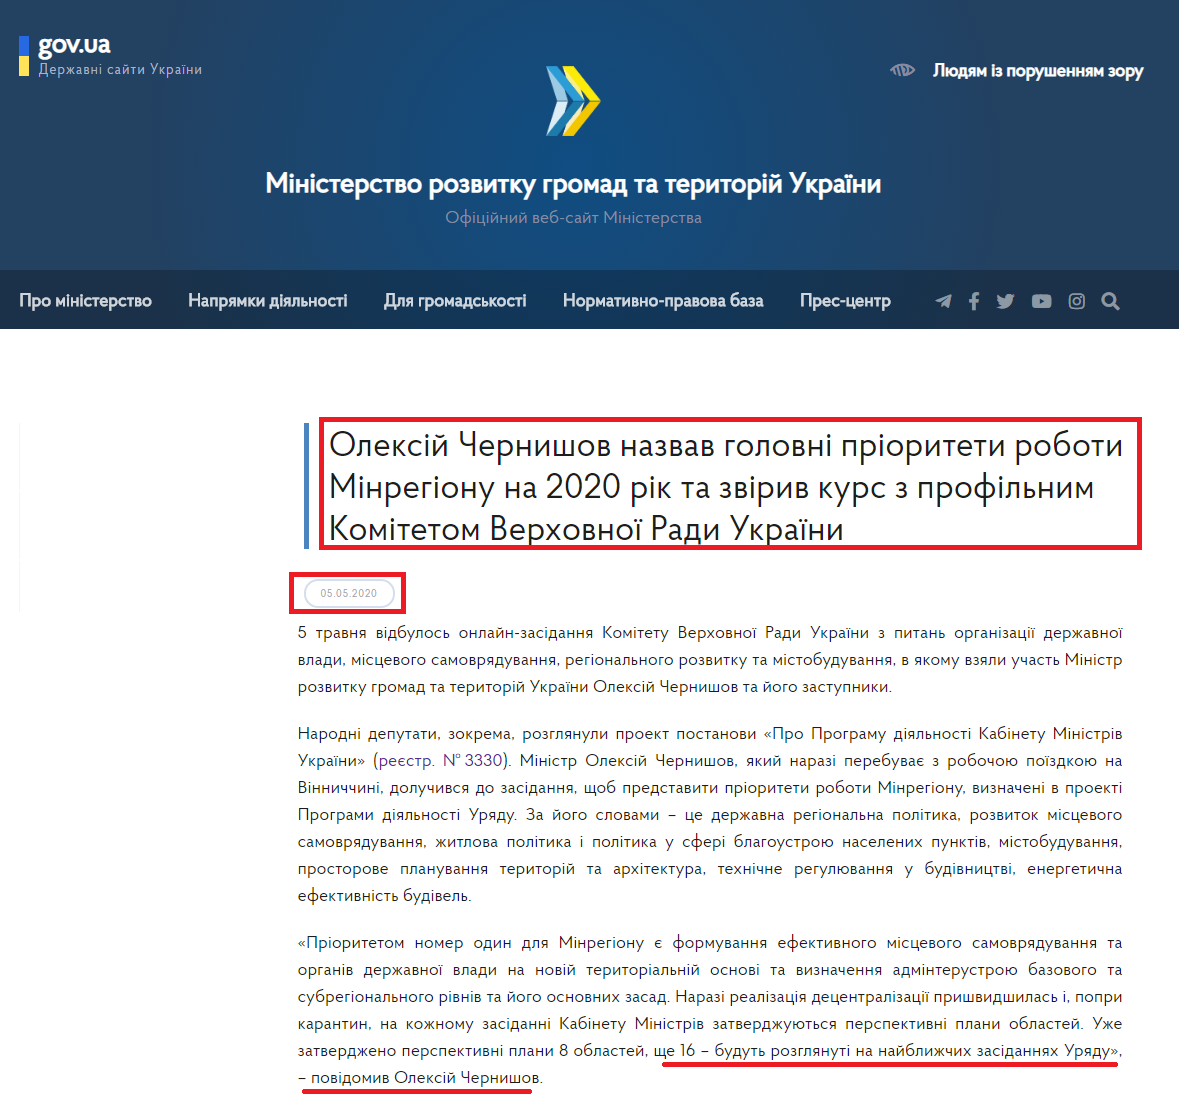 https://www.minregion.gov.ua/press/news/oleksij-chernyshov-nazvav-golovni-priorytety-roboty-minregionu-na-2020-rik-ta-zviryv-kurs-z-profilnym-komitetom-verhovnoyi-rady-ukrayiny/